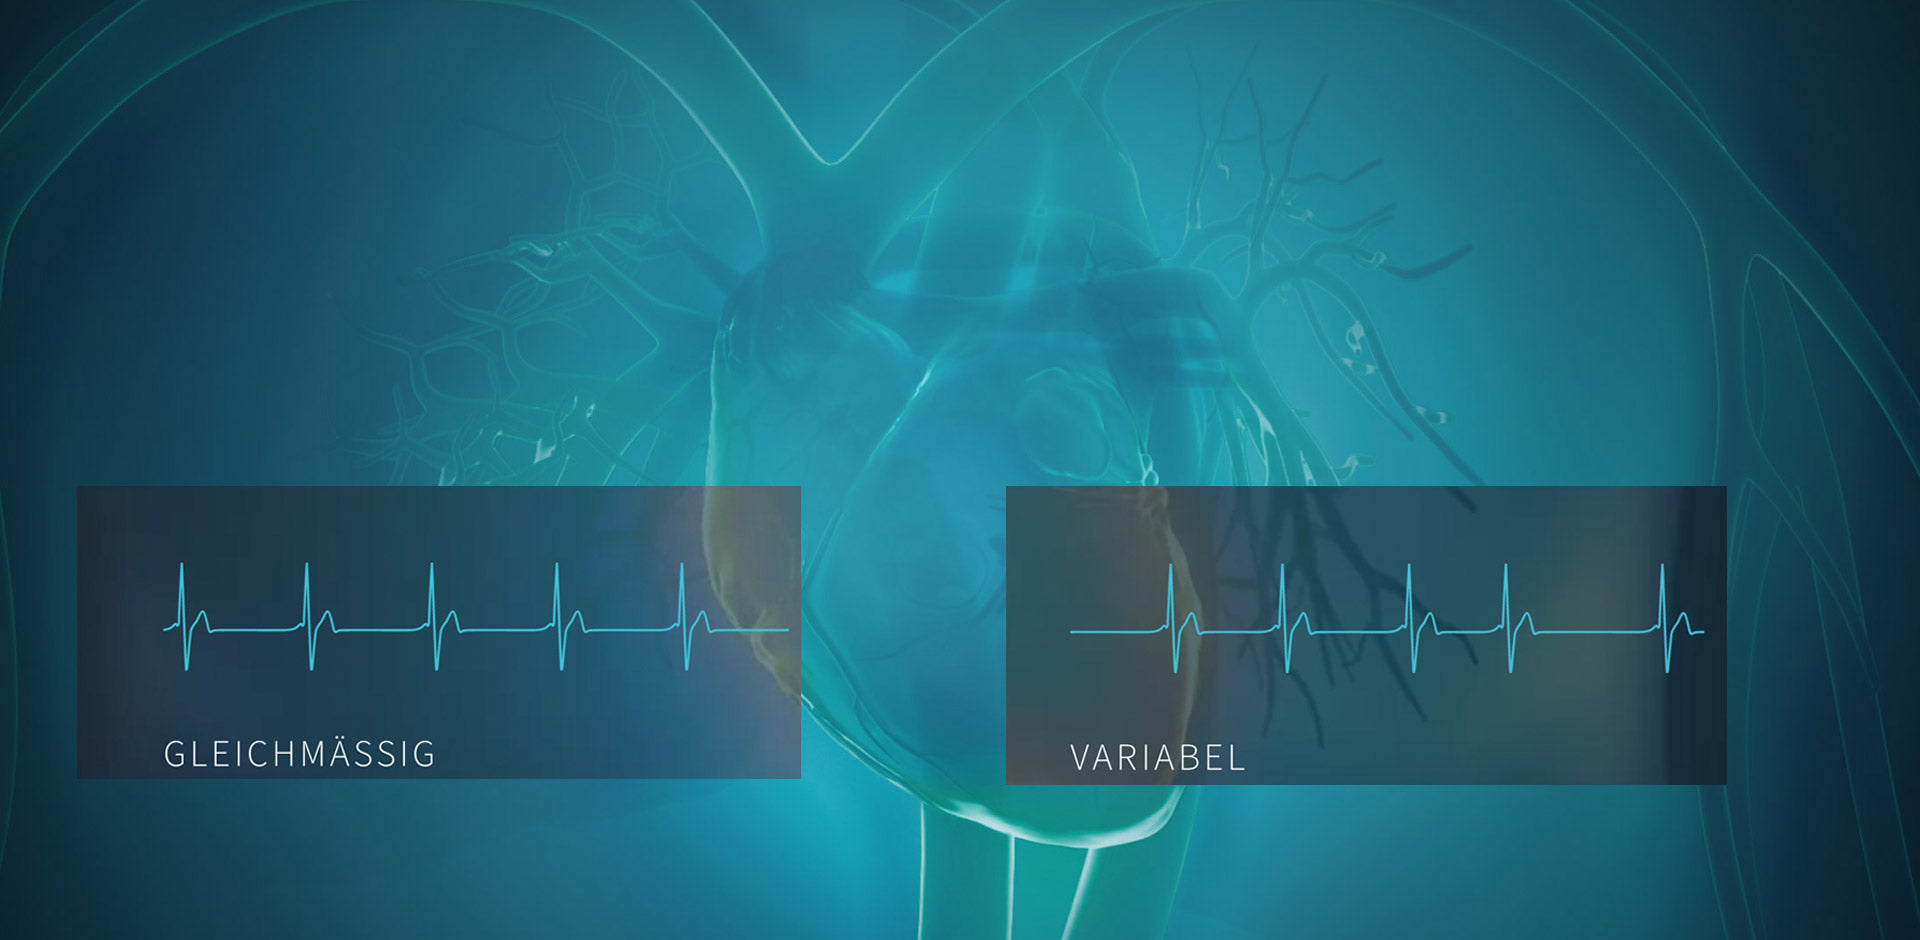 Eine Gegenüberstellung von variabler und nicht variabler Herzratenvariabilität